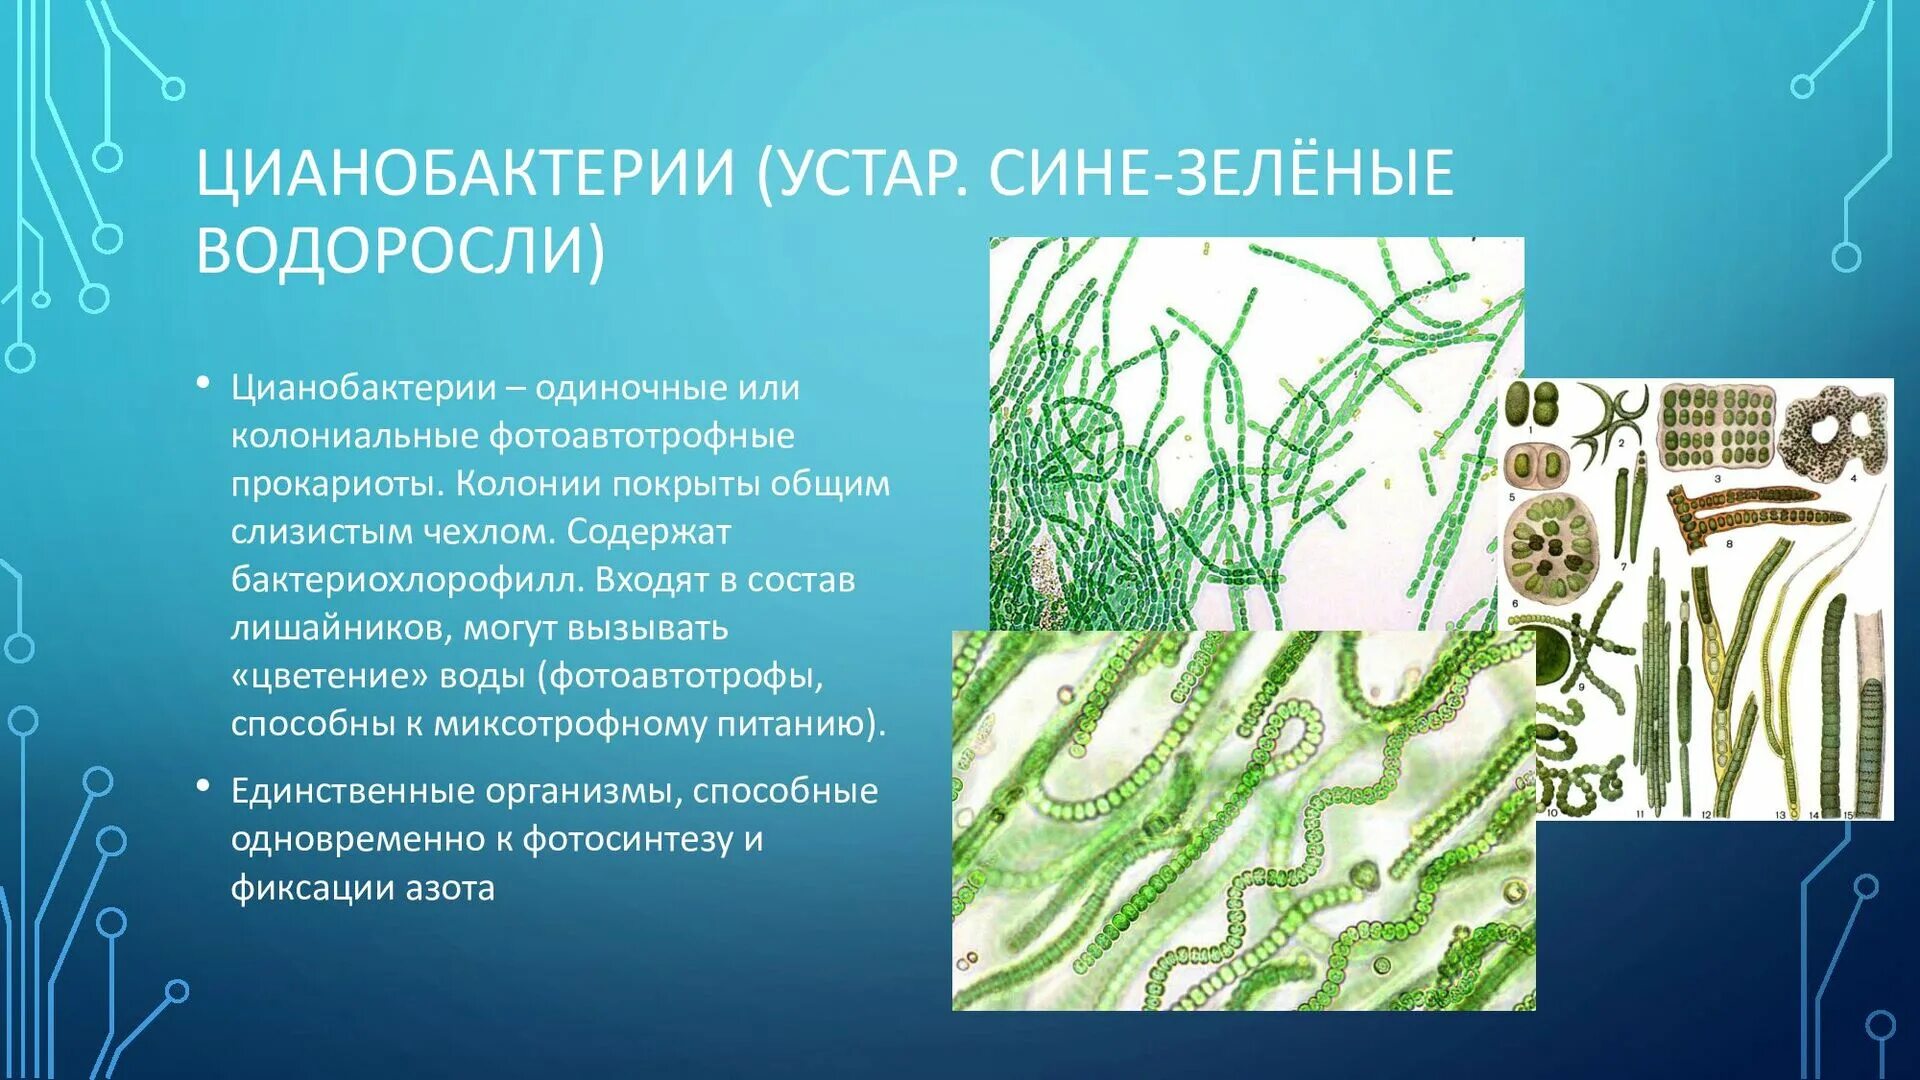 Цианобактерии сине-зеленые водоросли. Хамесифоновые цианобактерии. Фотосинтезирующие цианобактерии. Цианобактерии в лишайниках.